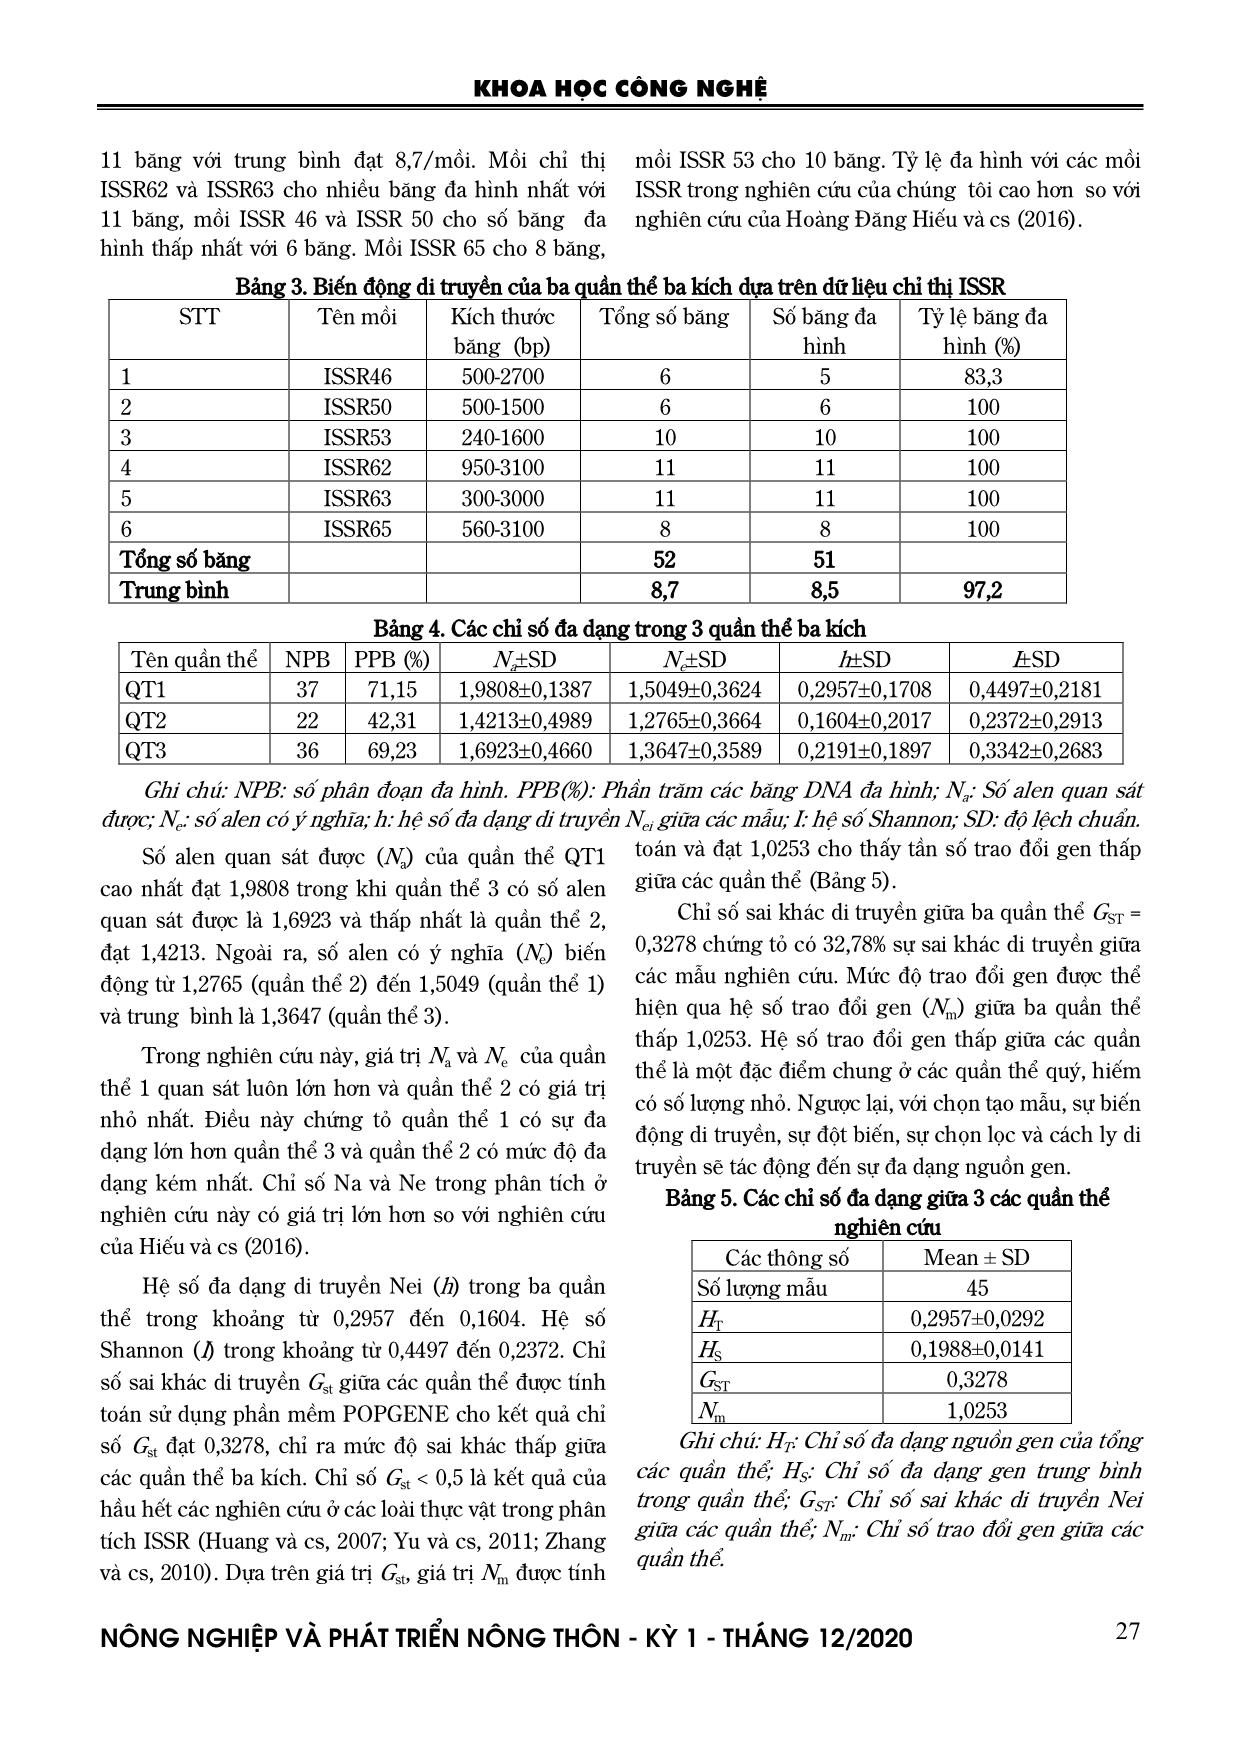 Đánh giá đa dạng di truyền trong các quần thể ba kích tím (Morinda officinalis F. C. How.,) tại Quảng Nam và Quảng Ninh bằng chỉ thị phân tử ISSR trang 5